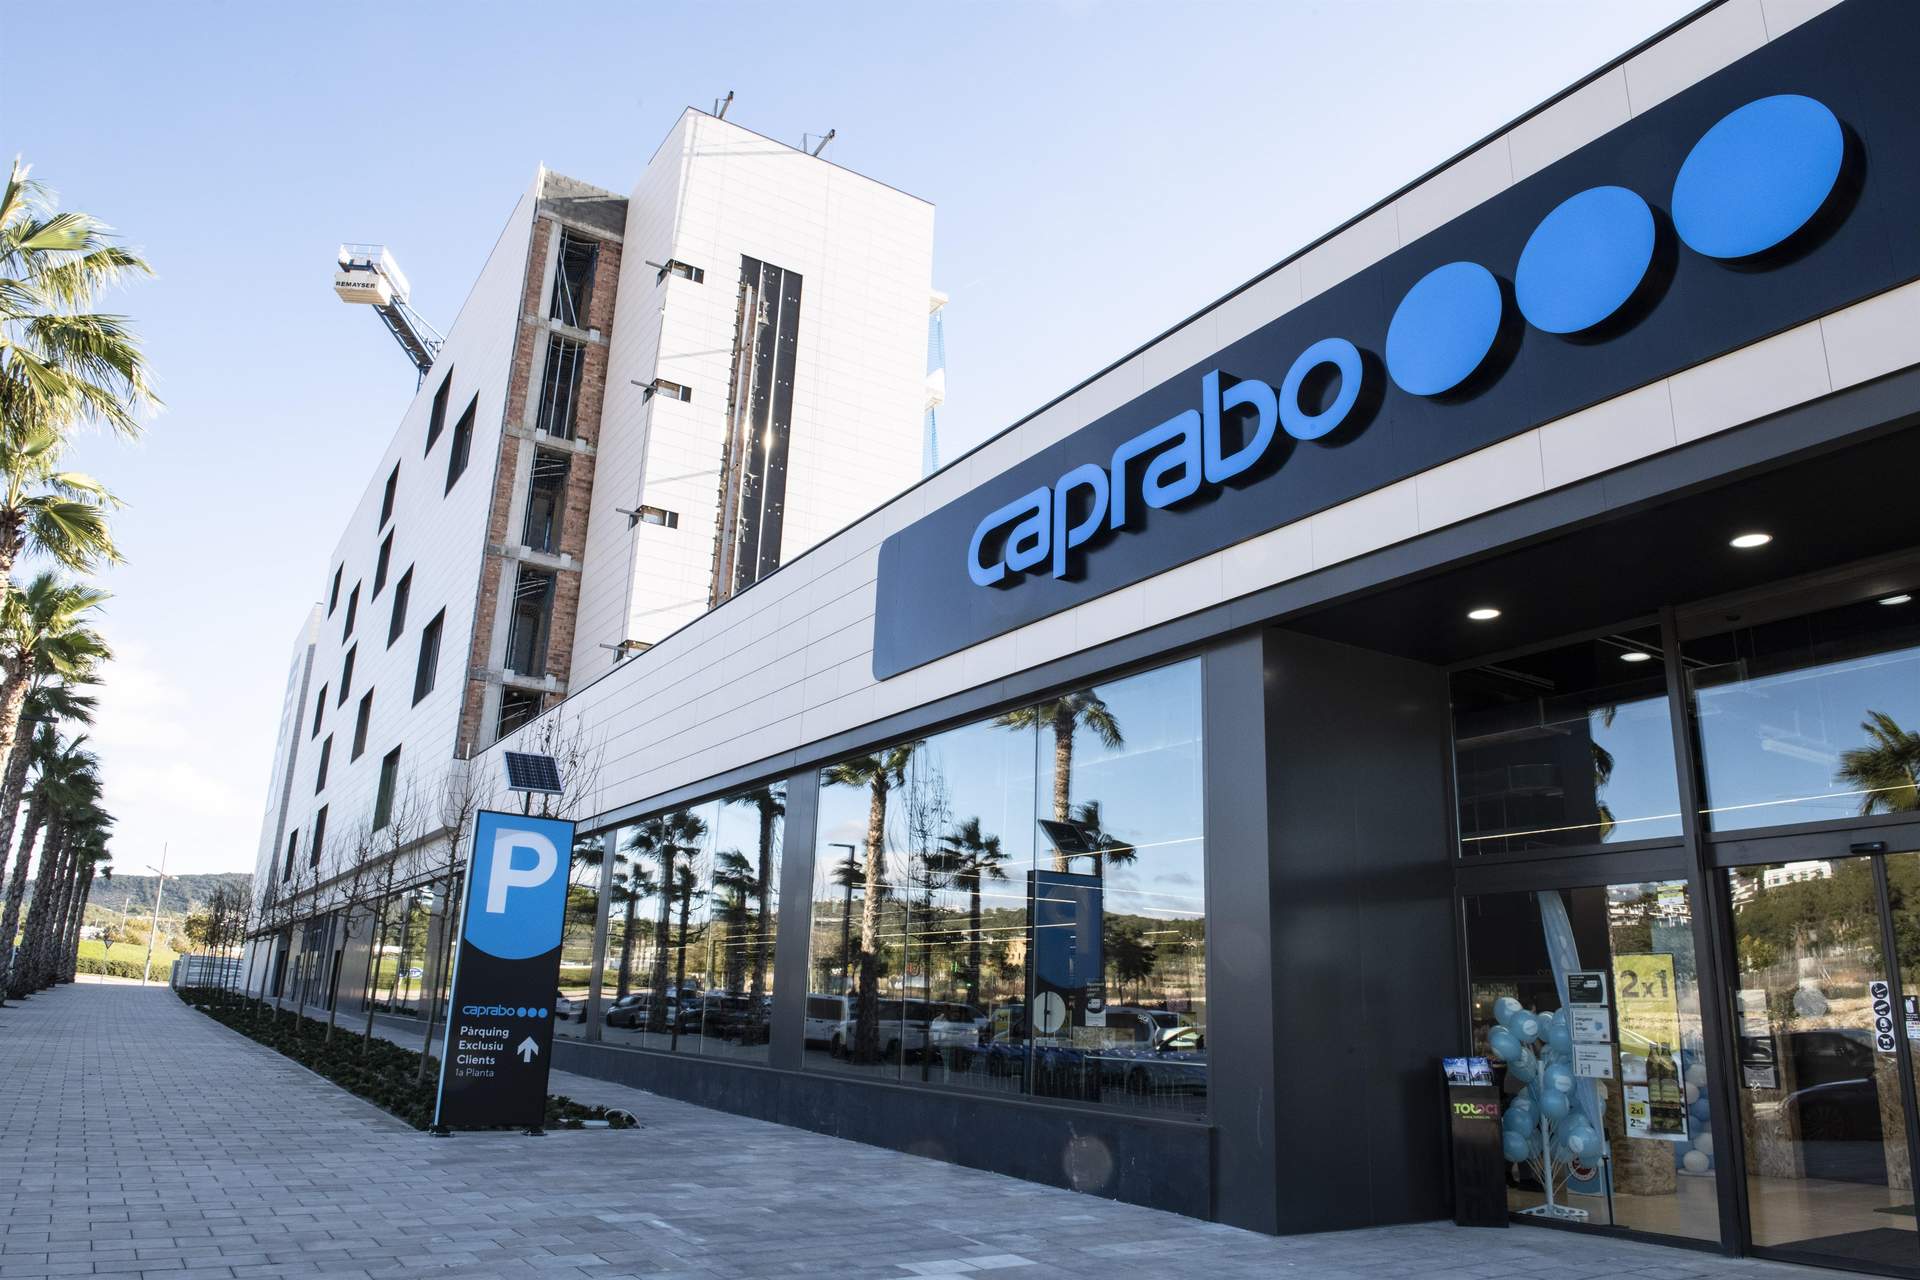 Bruselas aprueba la compra conjunta de Caprabo y Cecosa por Eroski, EPCG y ECMI